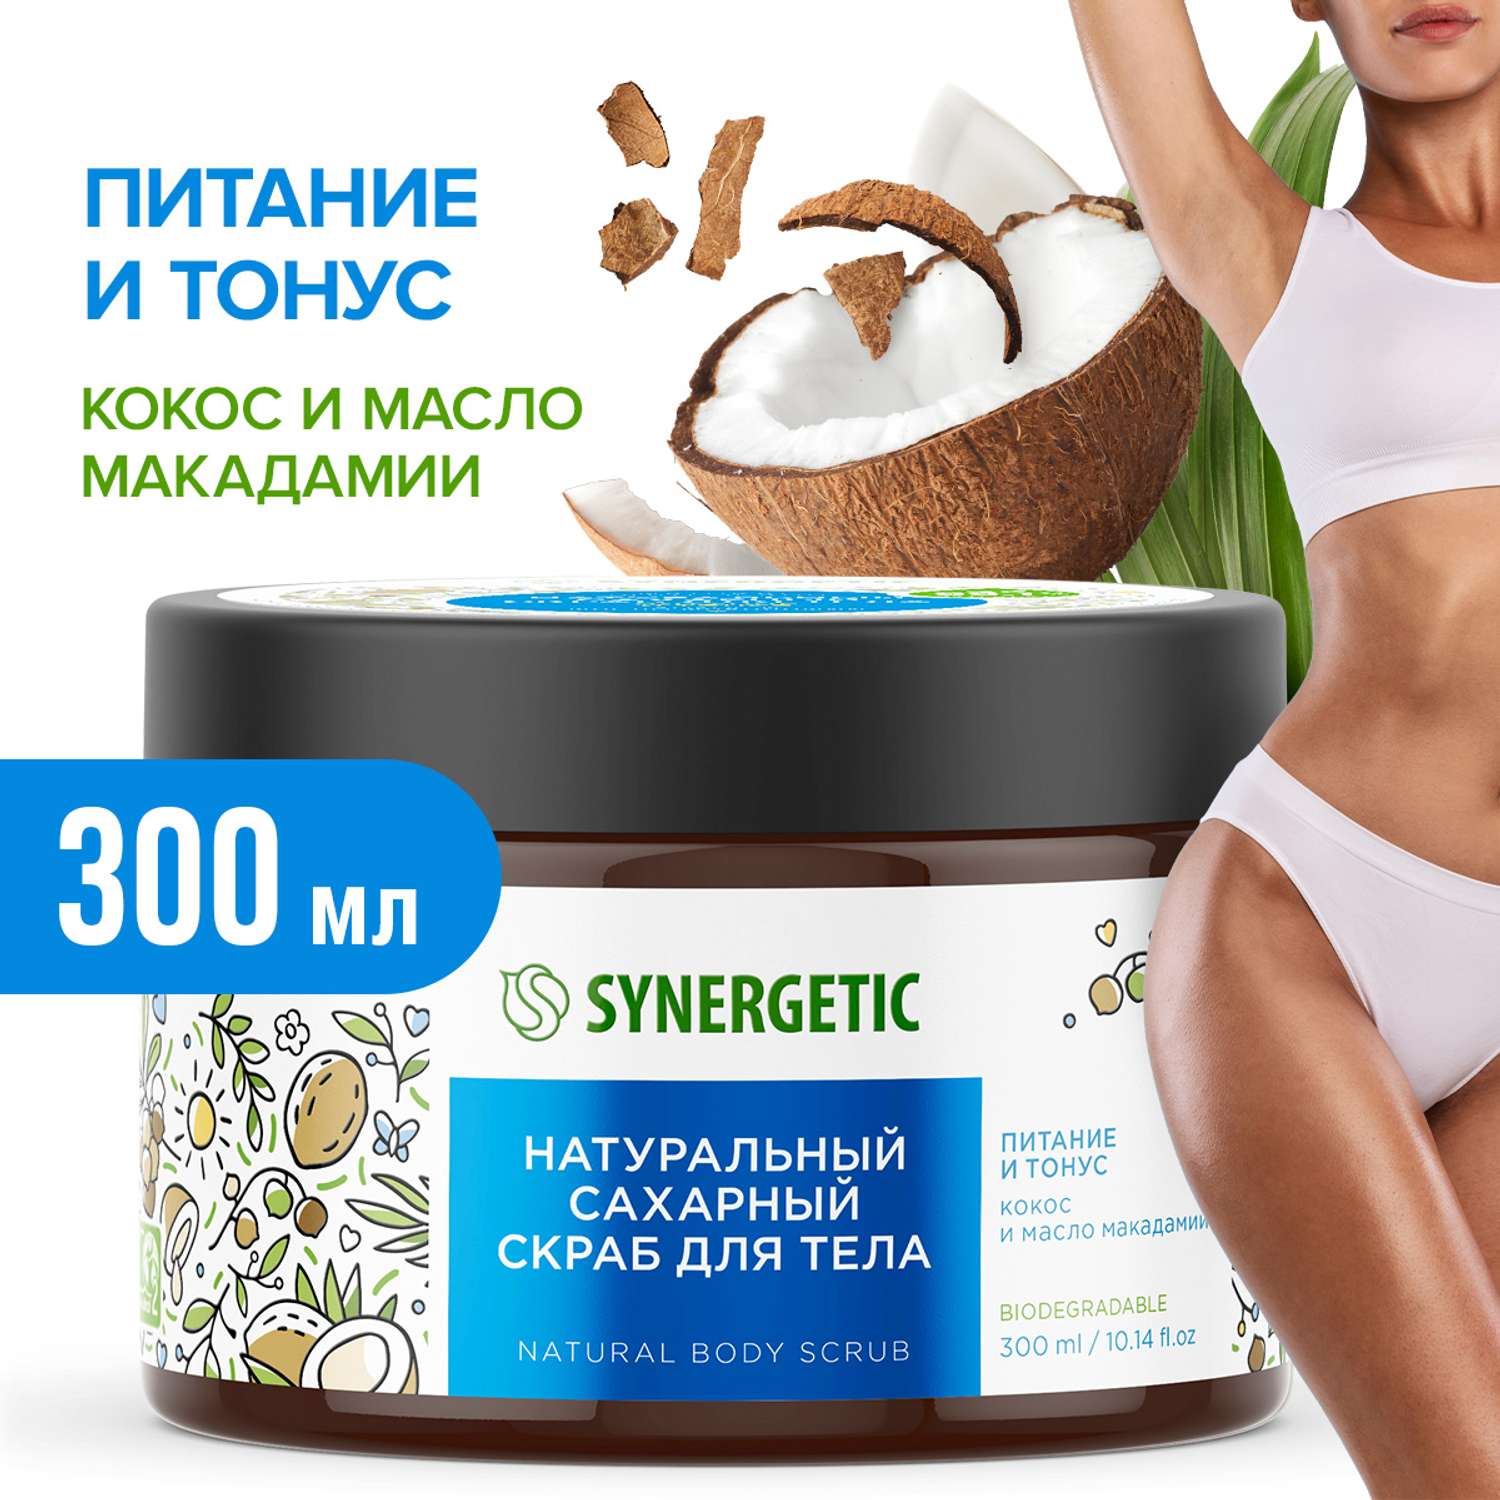 Скраб для тела SYNERGETIC питание и тонус кокос и масло макадамии сахарный натуральный 300 мл - фото 1